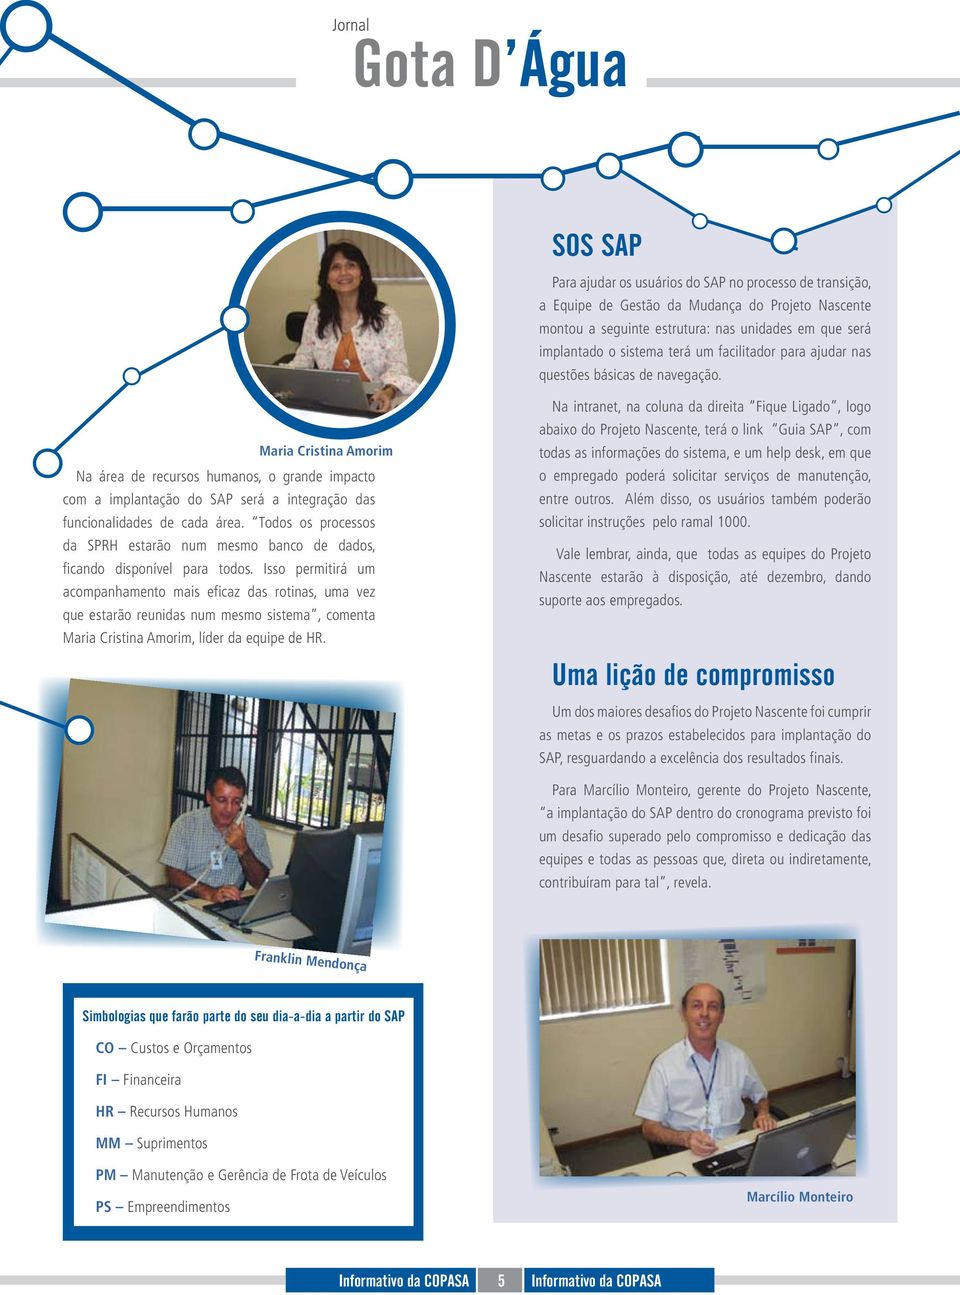 Maria Cristina Amorim Na área de recursos humanos, o grande impacto com a implantação do SAP será a integração das funcionalidades de cada área.